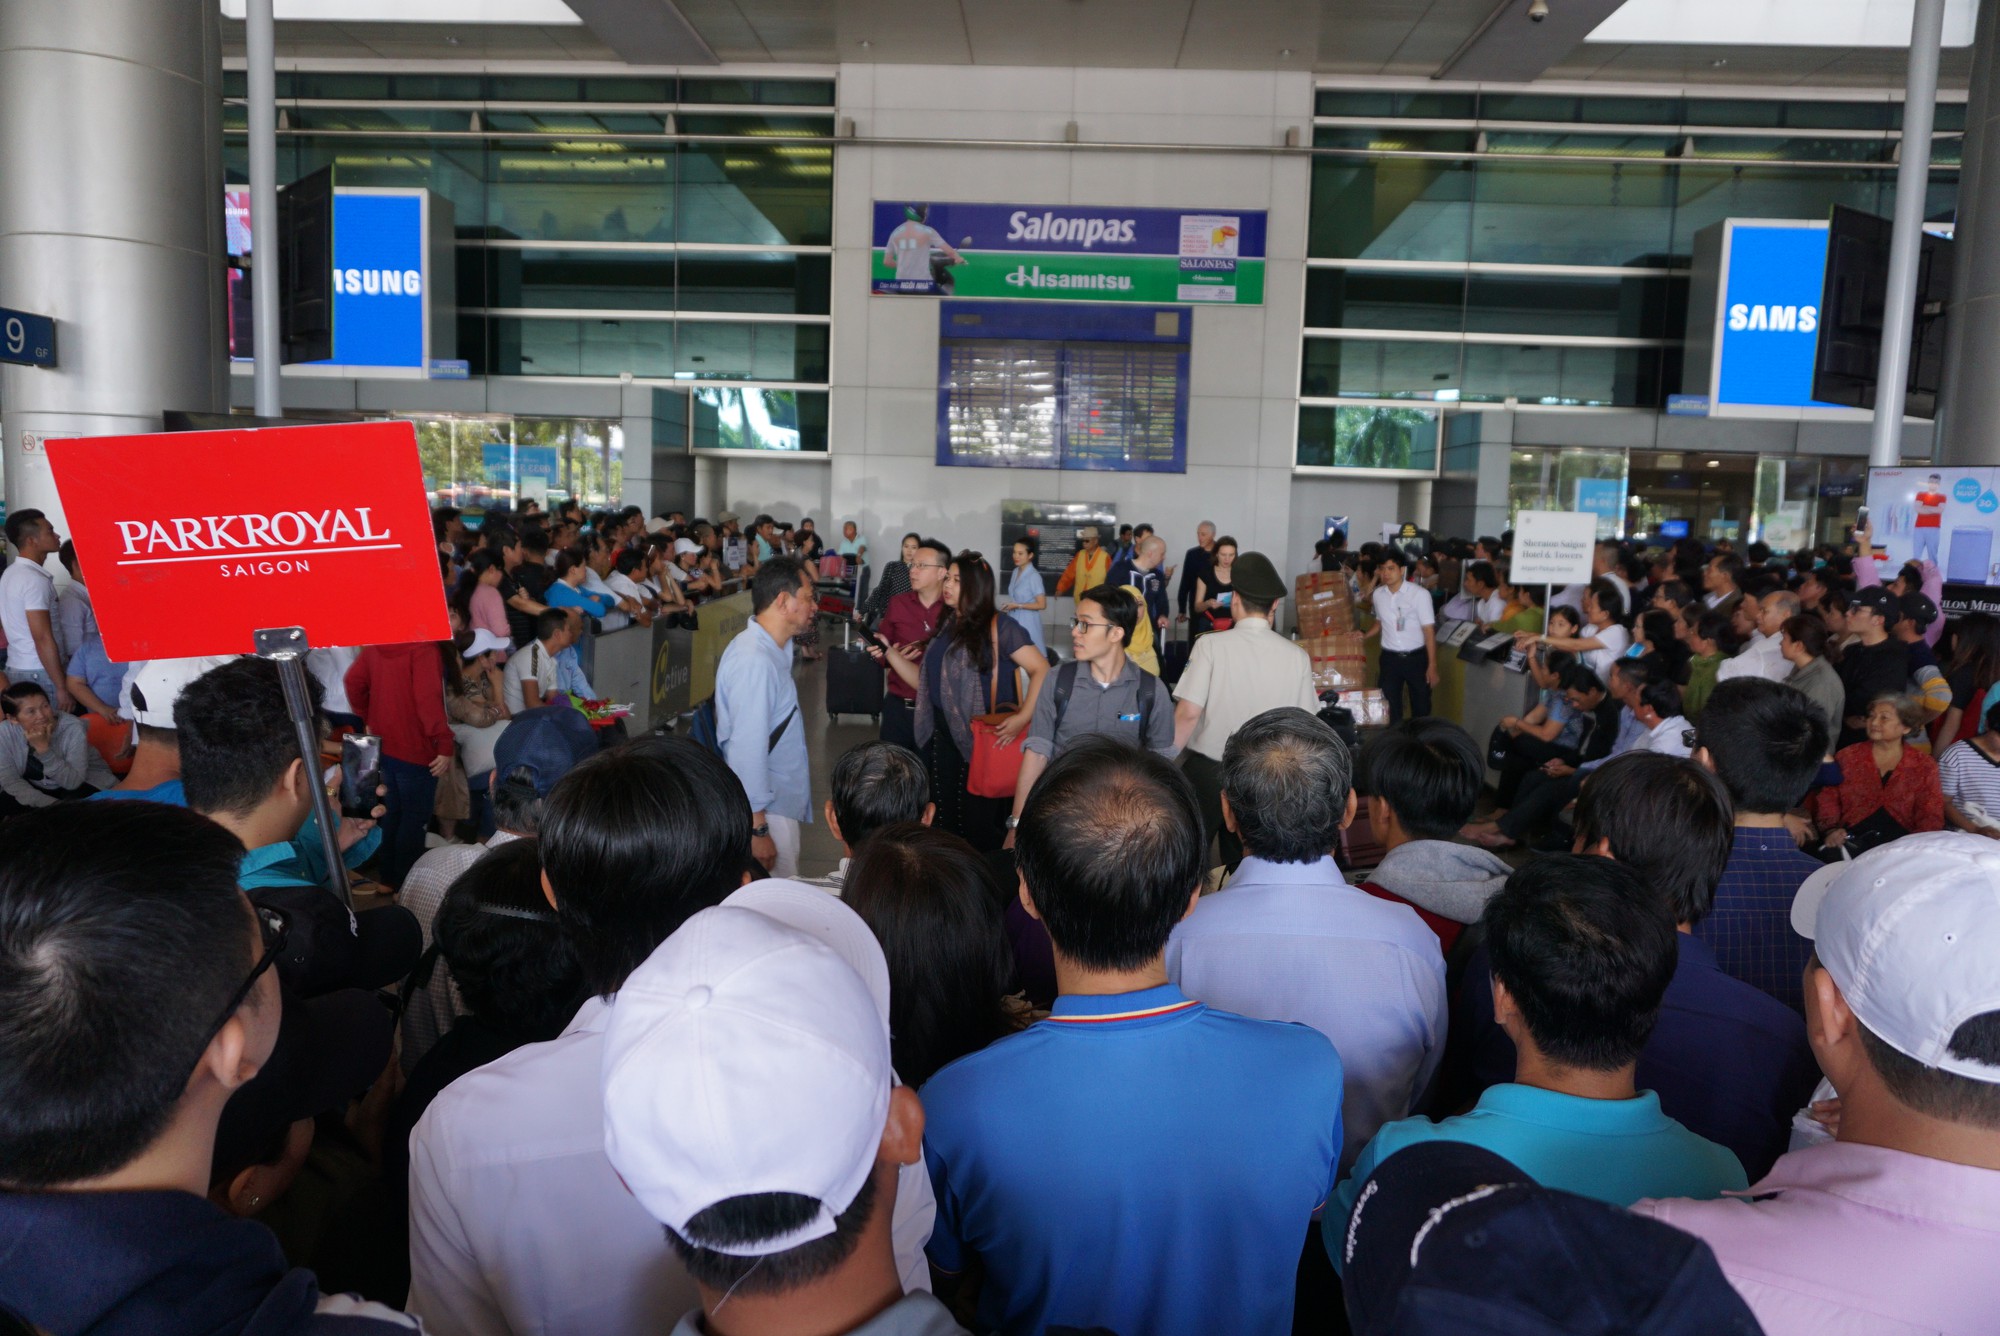 Ngàn người vật vạ ở sân bay Tân Sơn Nhất chờ đón Việt kiều - Ảnh 1.